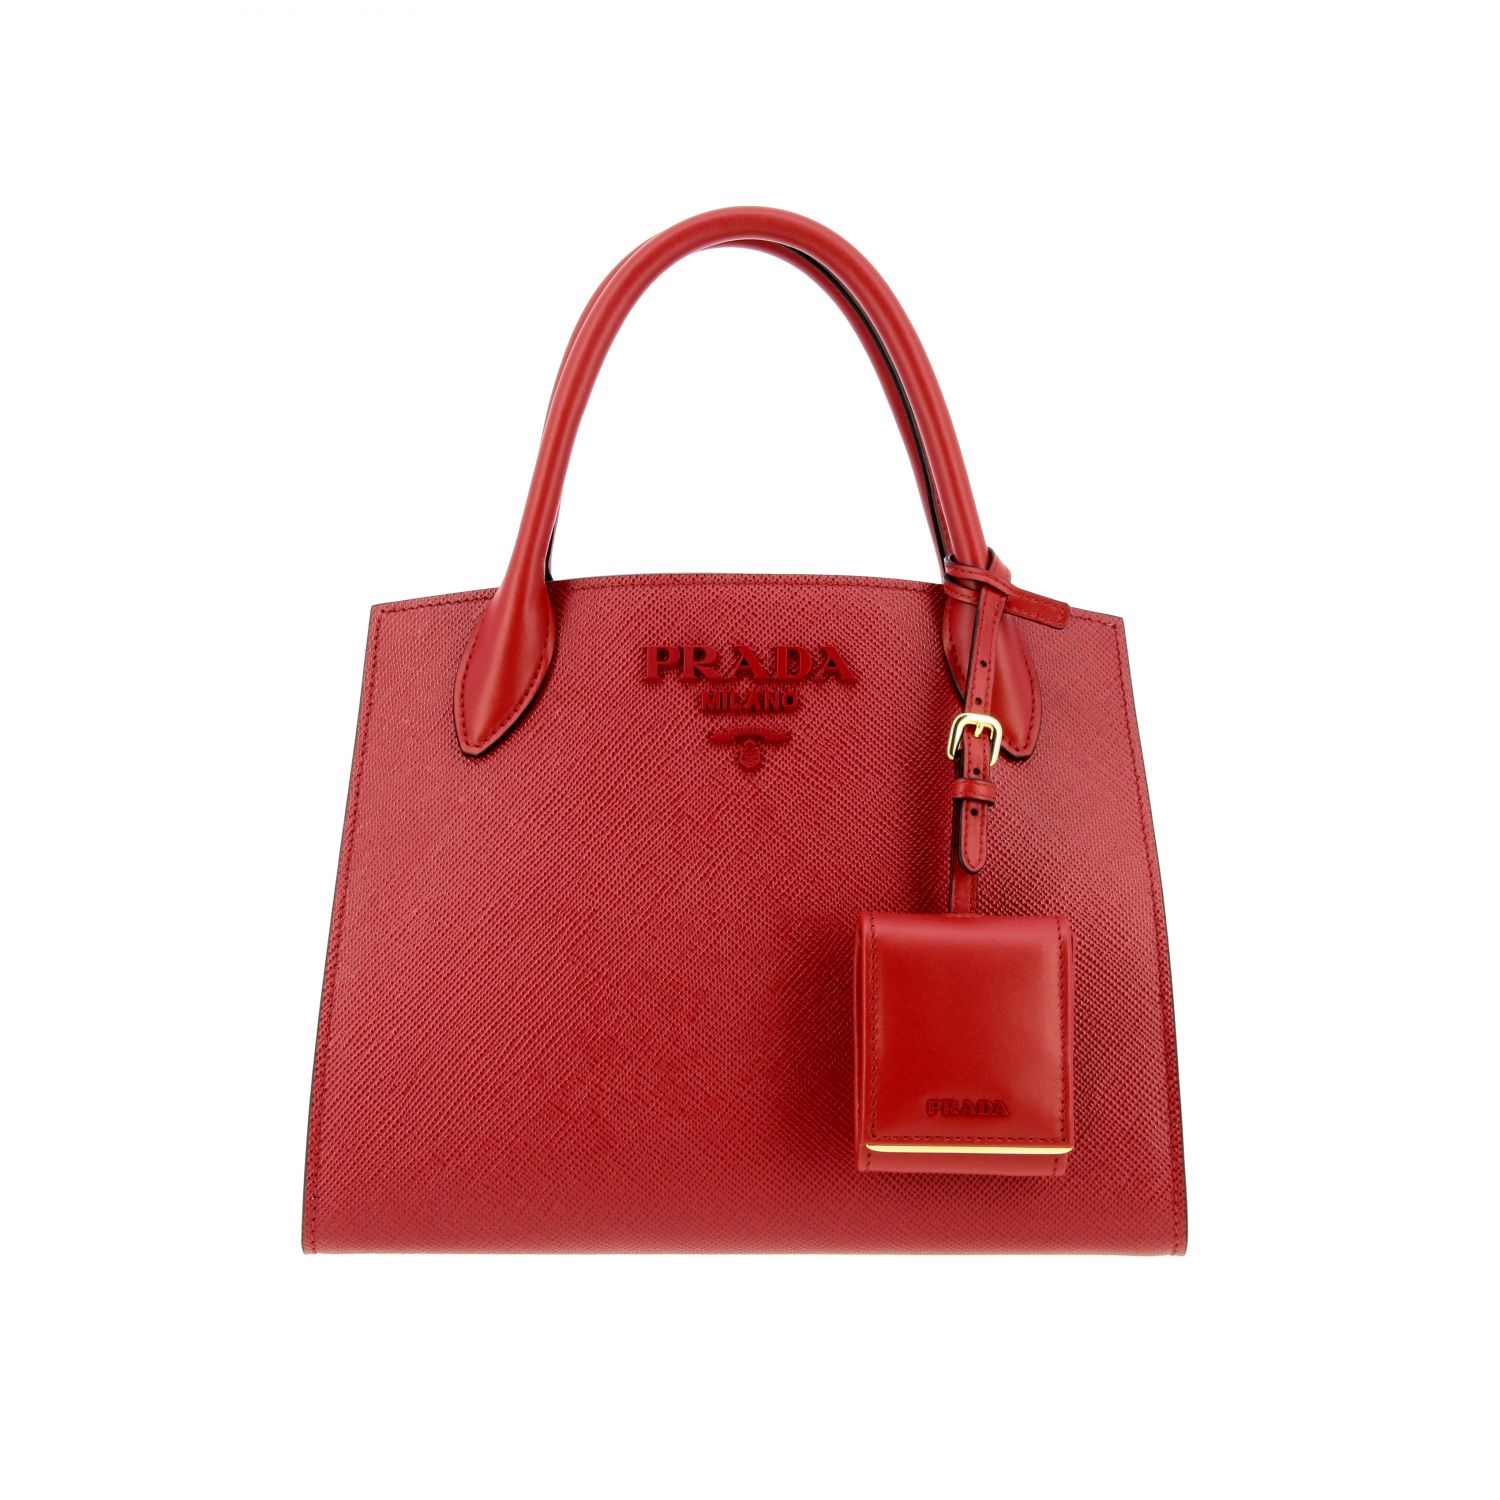 Handtasche Prada: Monochrome Tasche in Saffiano Leder Prada-Logo rot 1